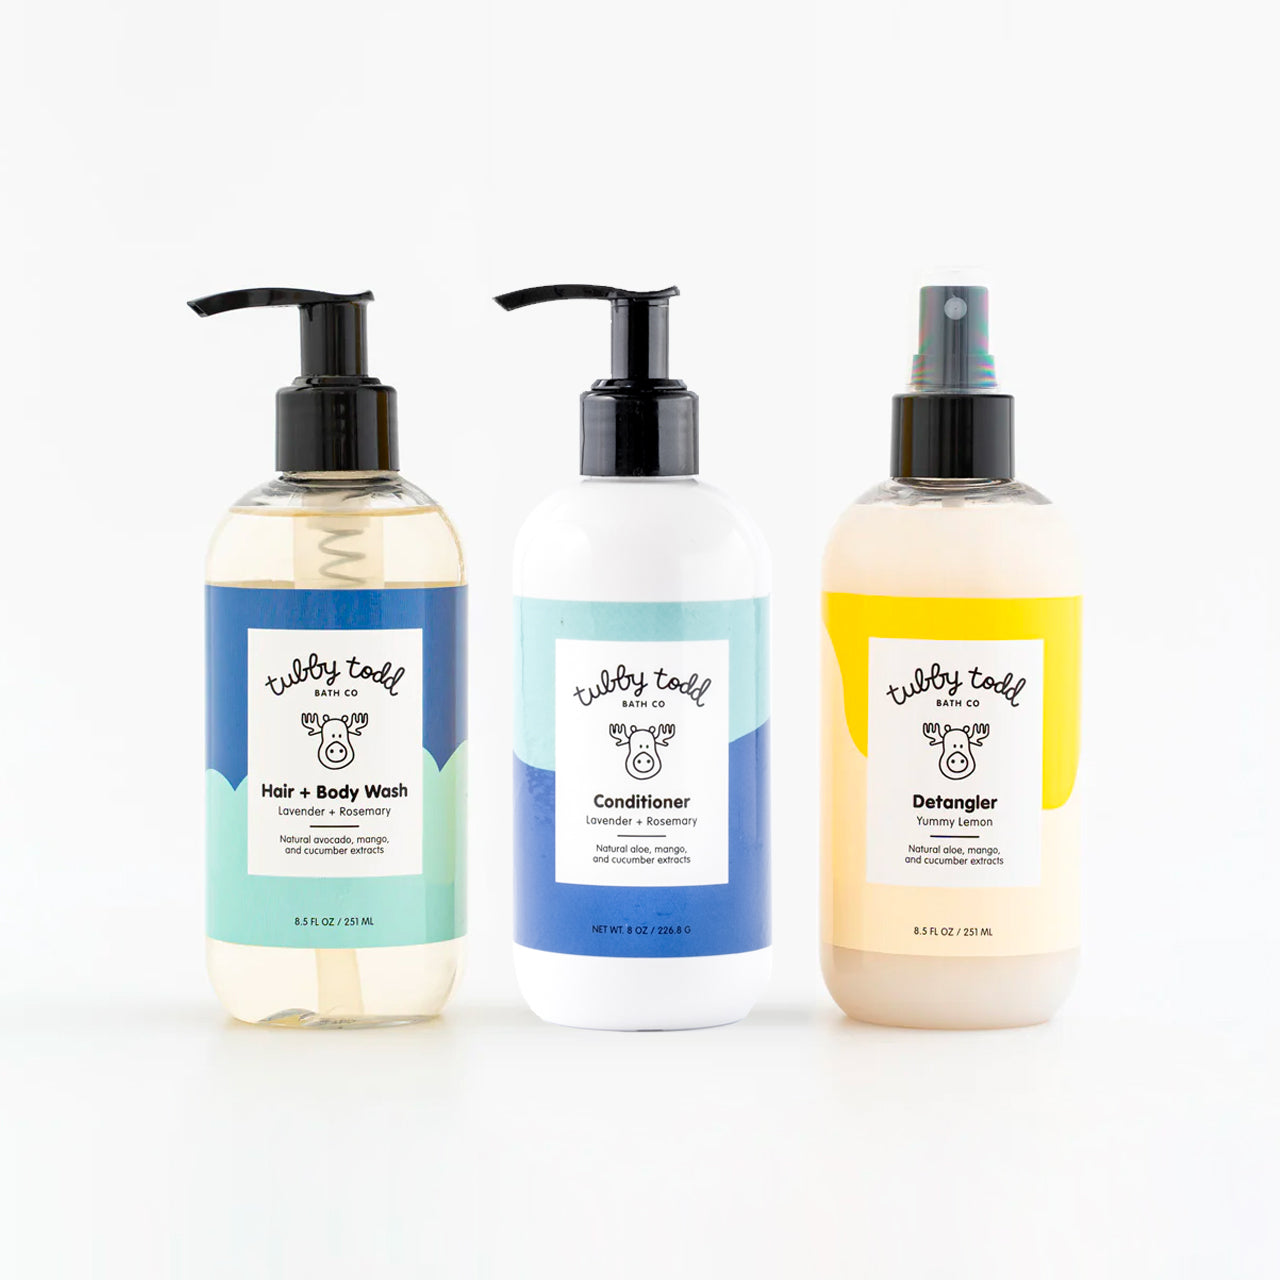 LavRo Hair + Body Wash, LavRo Hair Conditioner and Lemon Detangler